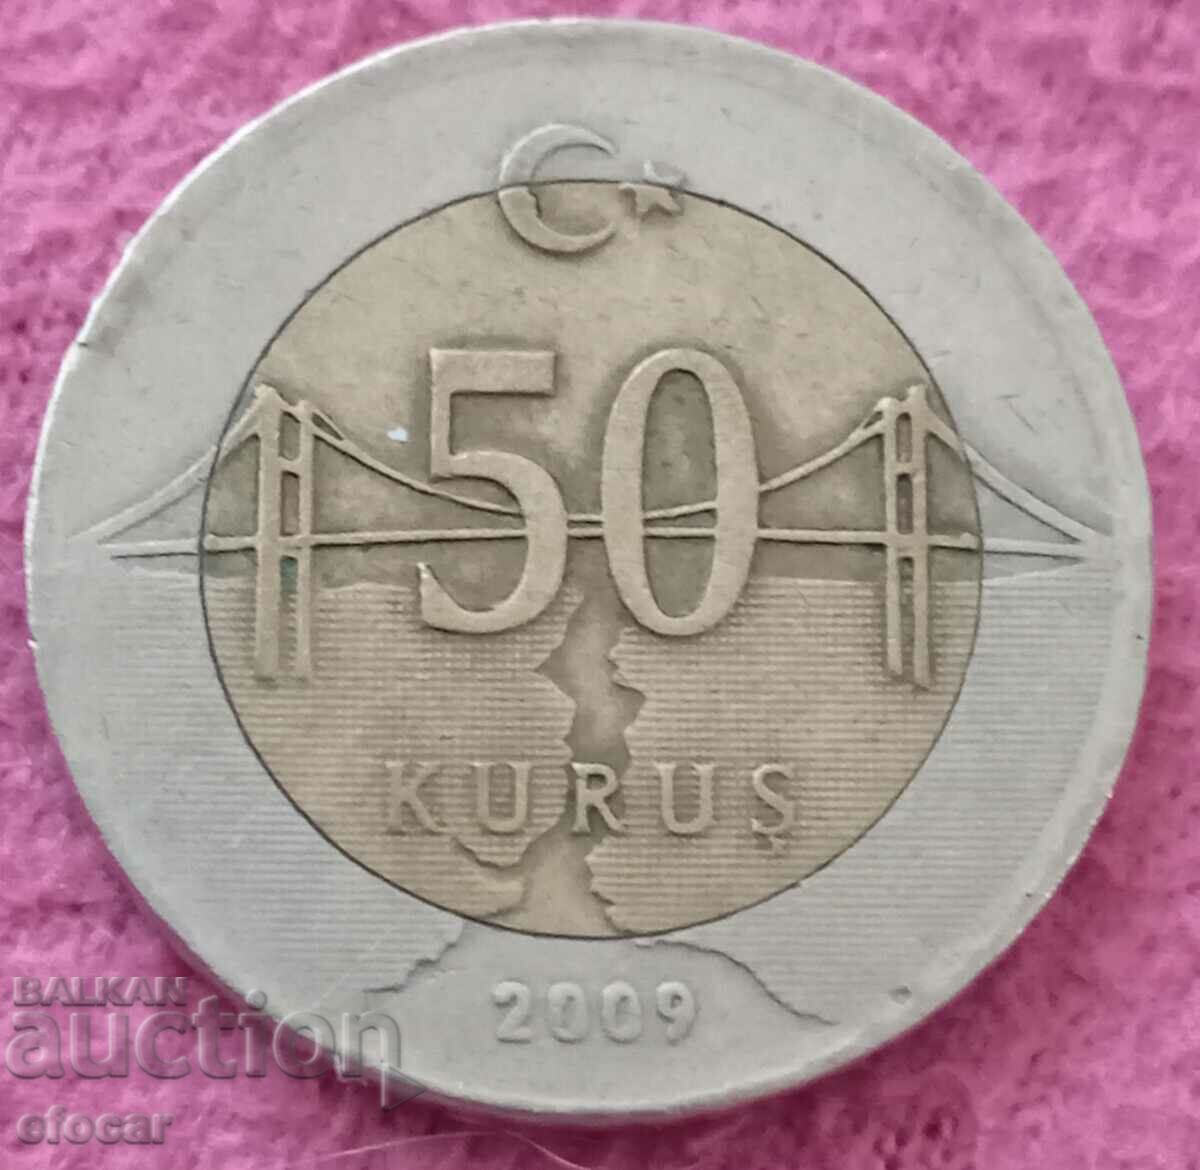 50 kuruş Turkey 2009